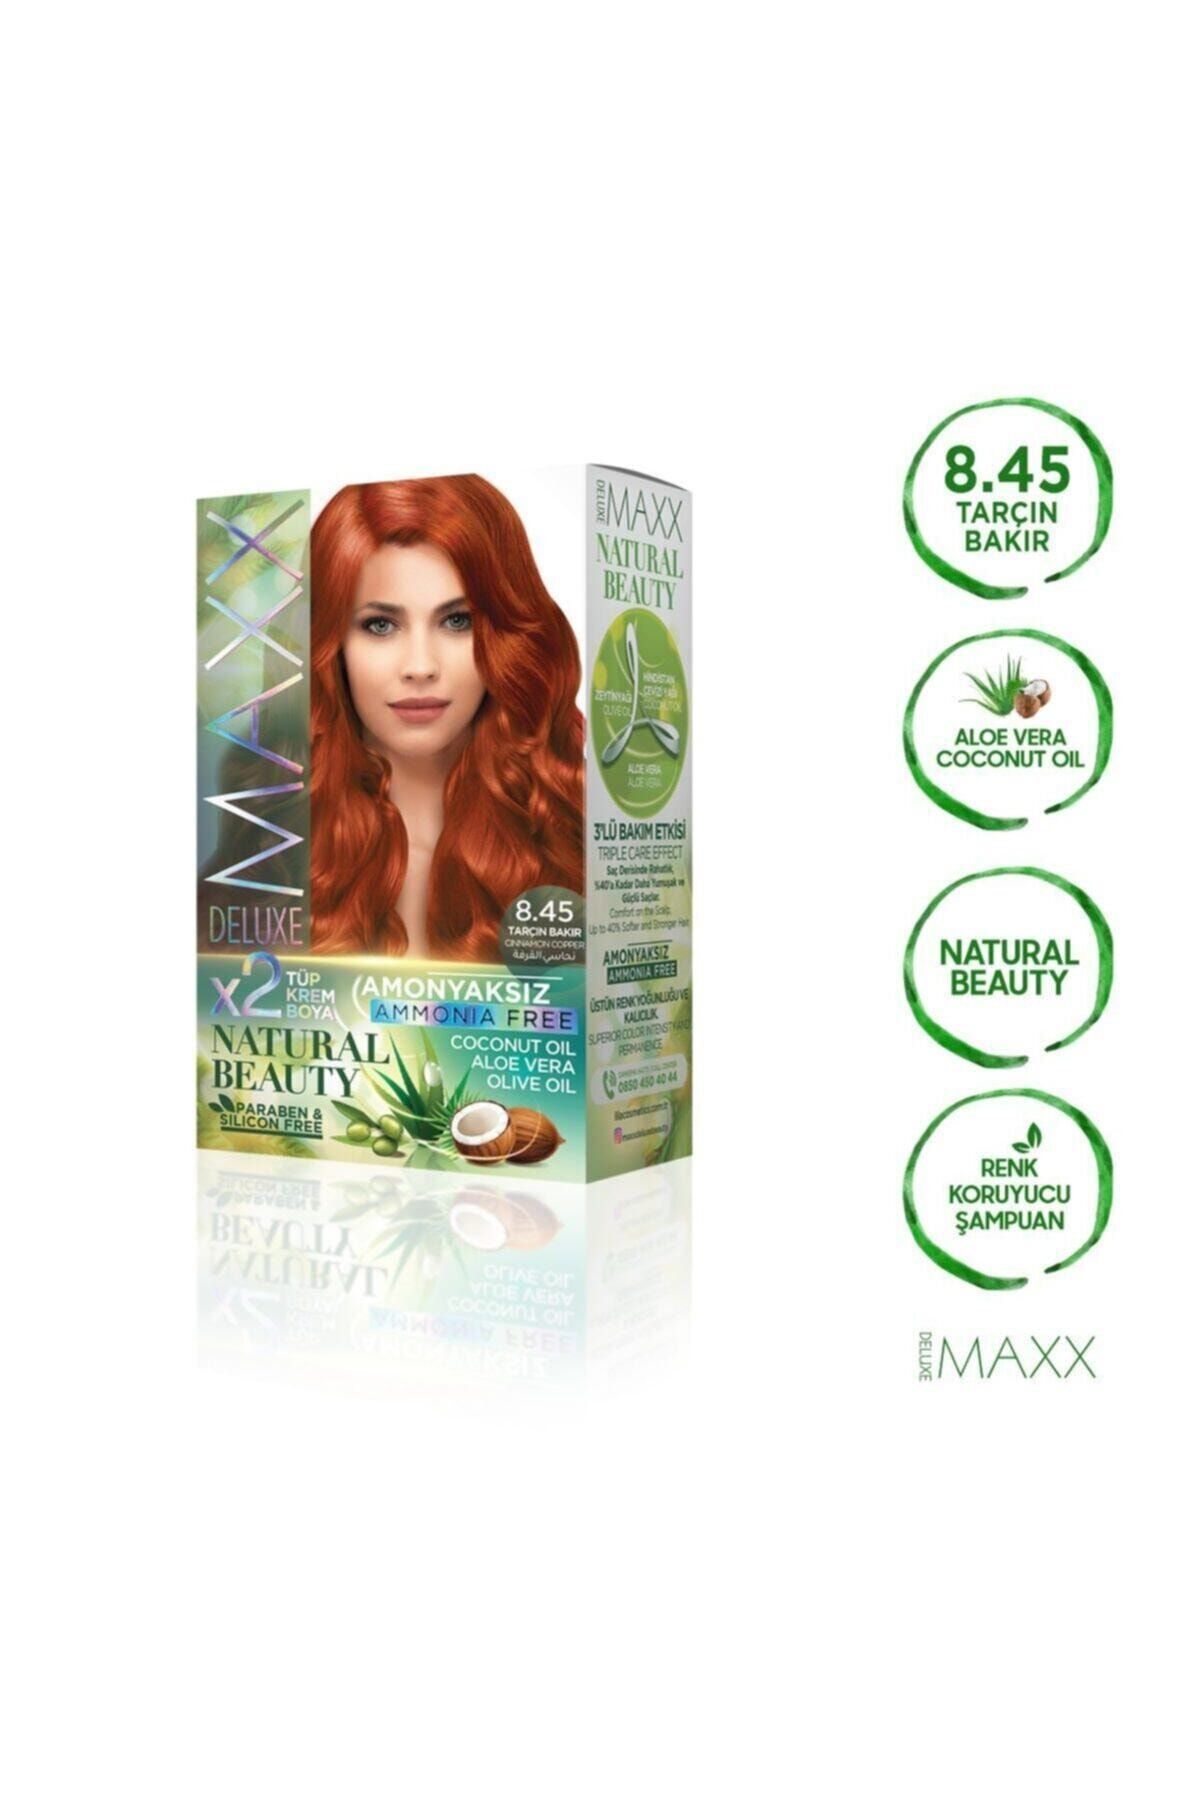 MAXX DELUXE Natural Beauty Amonyaksız 8.45 Tarçın Bakır Saç Boyası Seti